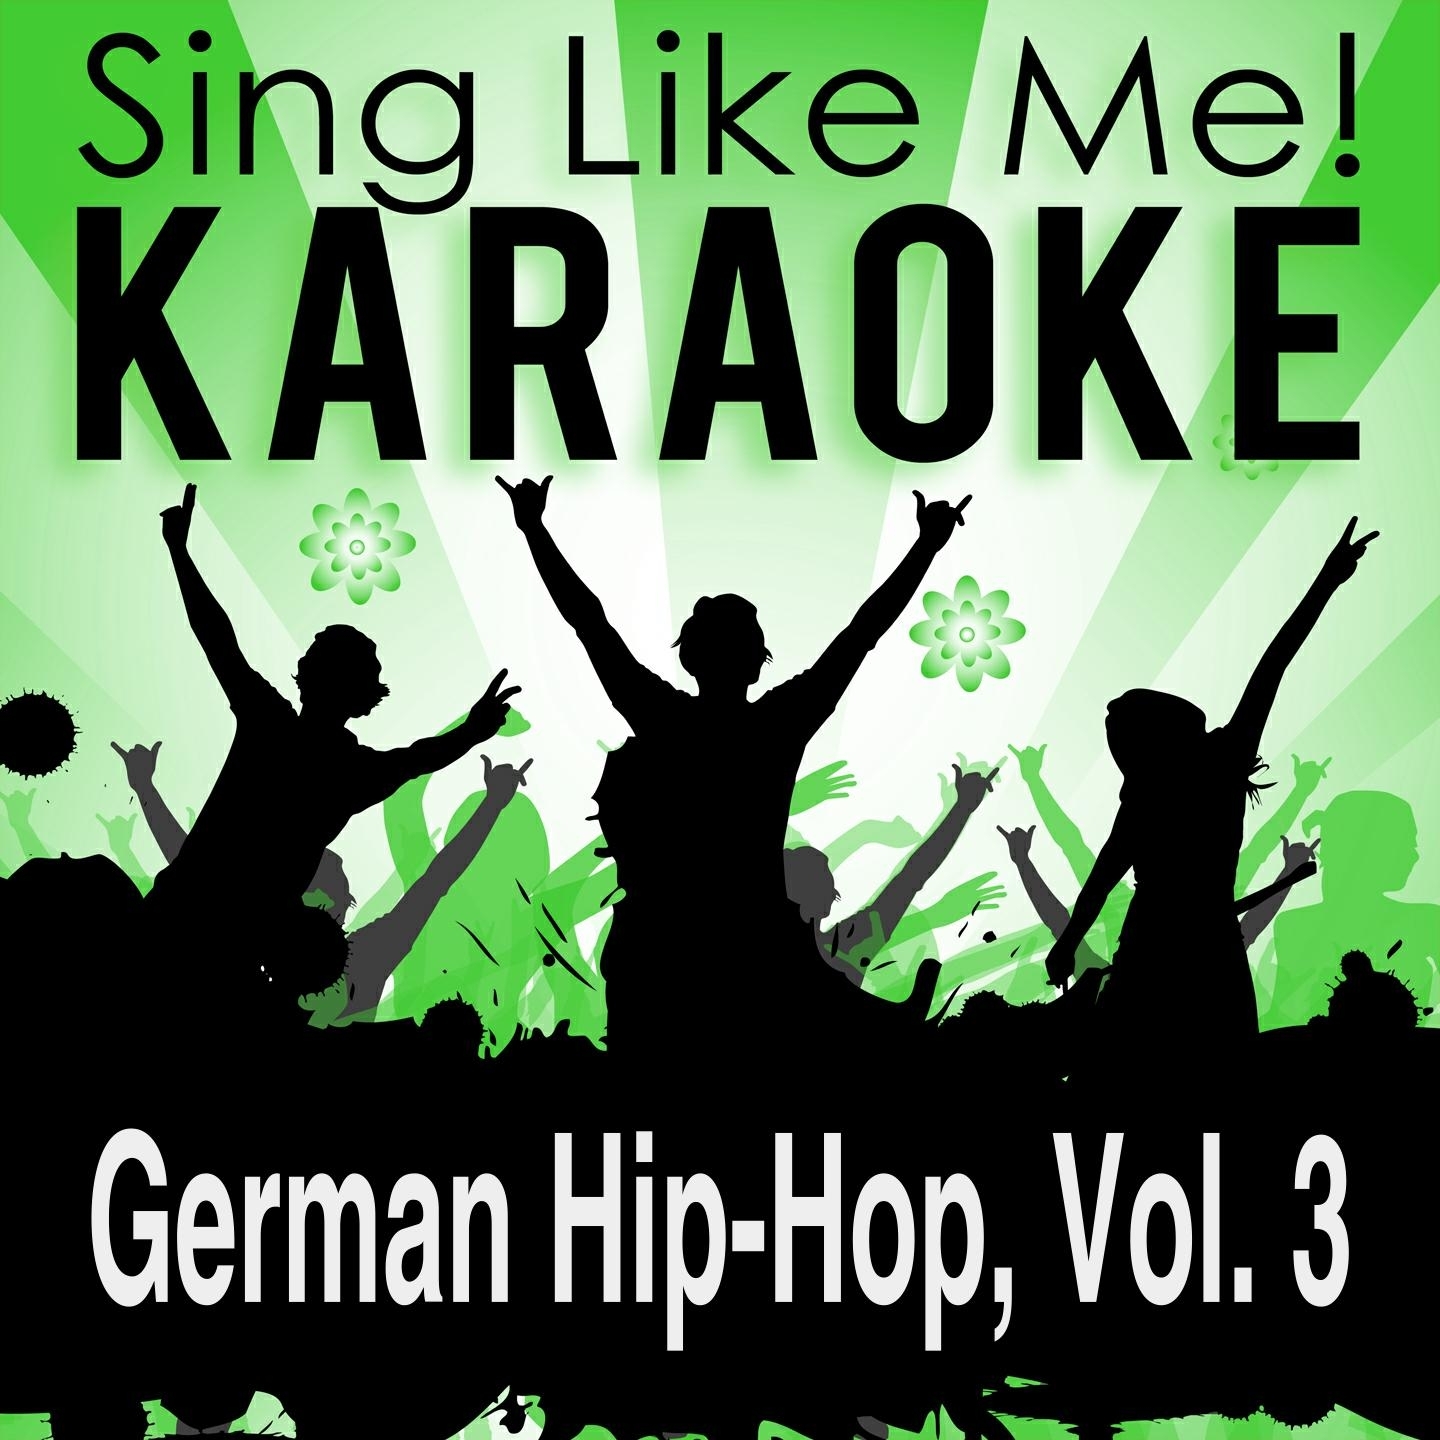 German Hip-Hop, Vol. 3 (Karaoke Version)